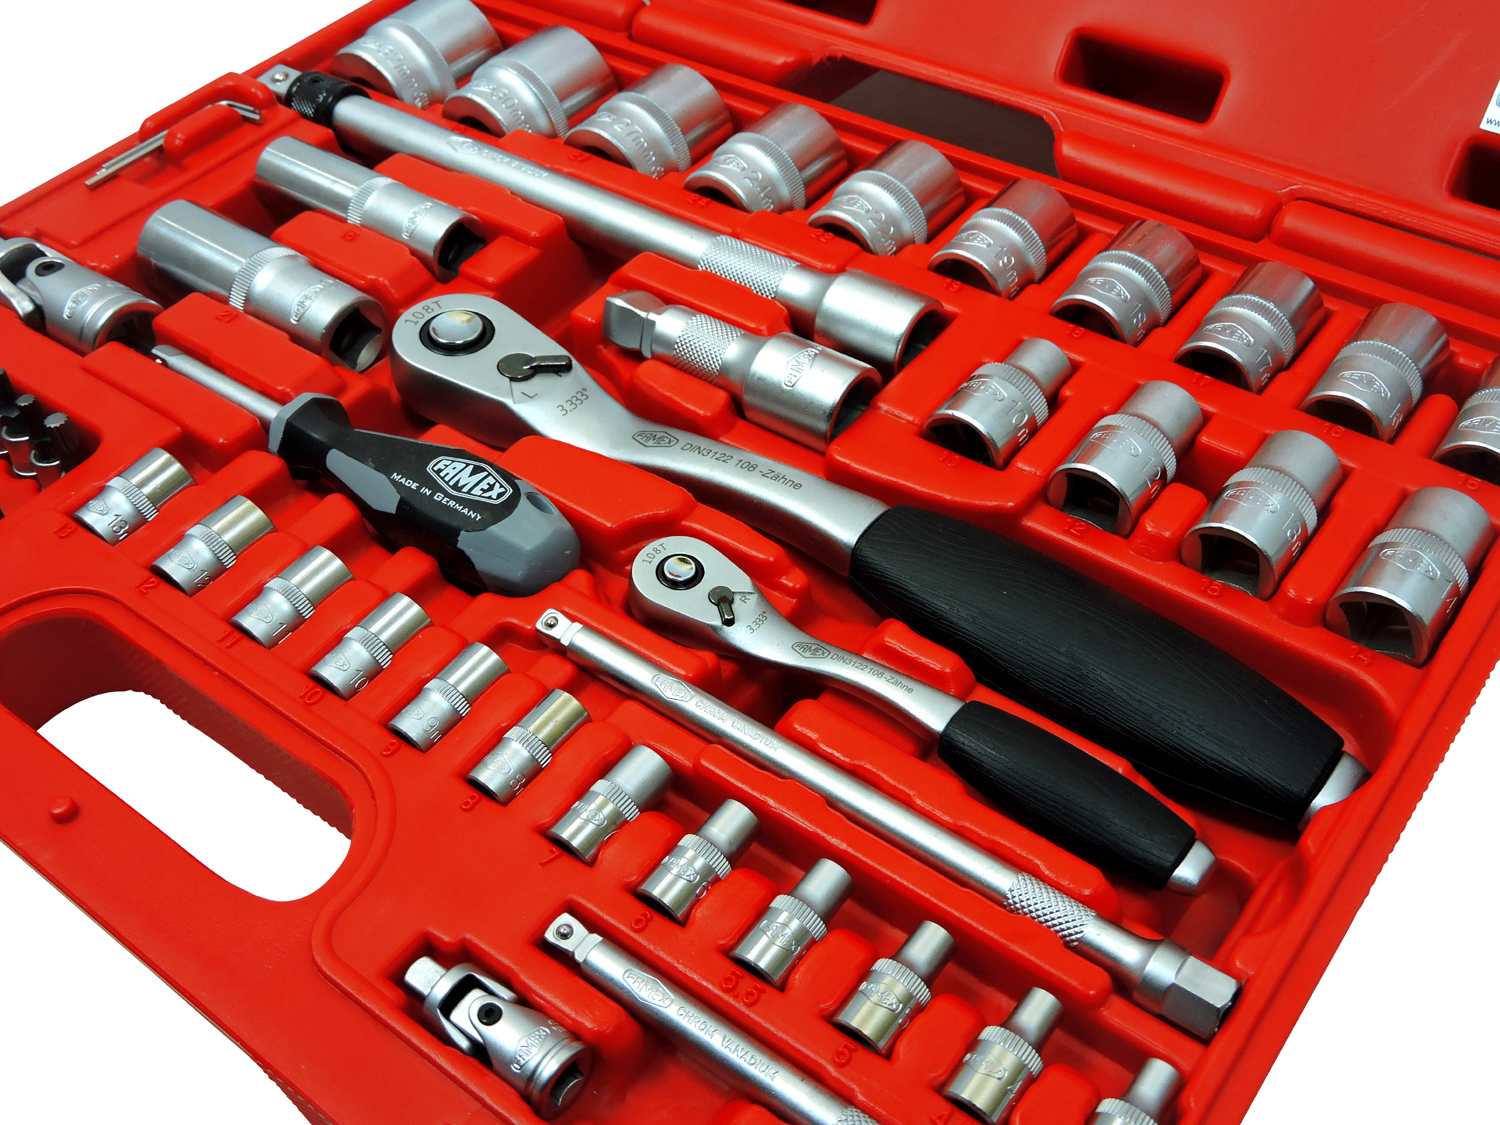 Werkzeuge günstig online kaufen - FAMEX 728-14 Werkzeugkoffer Komplettset  High-End Qualität, mit 66-teiligem Steckschlüsselsatz